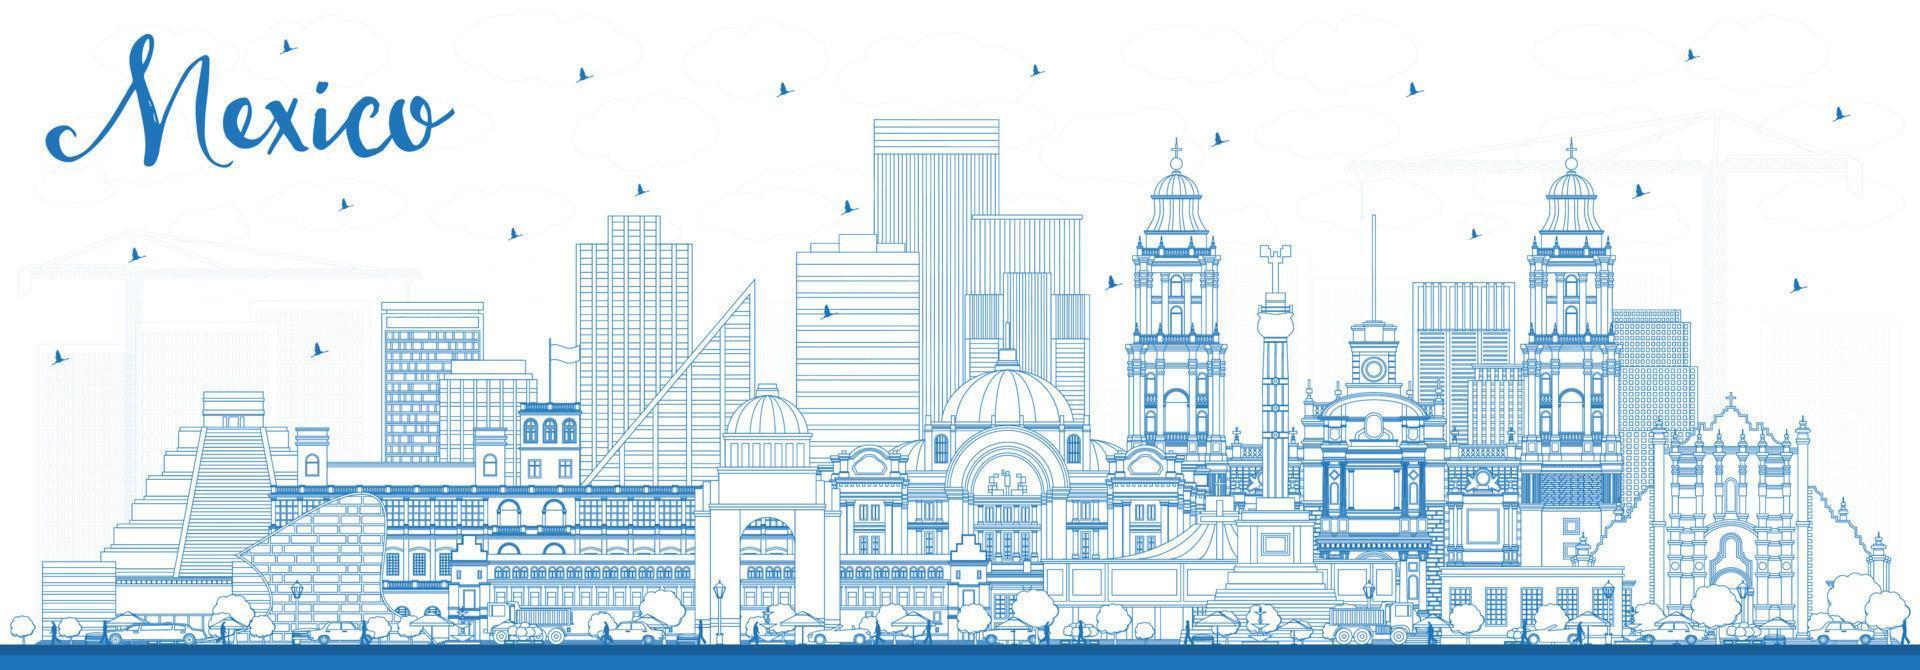 décrire les toits de la ville de mexico avec des bâtiments bleus. vecteur